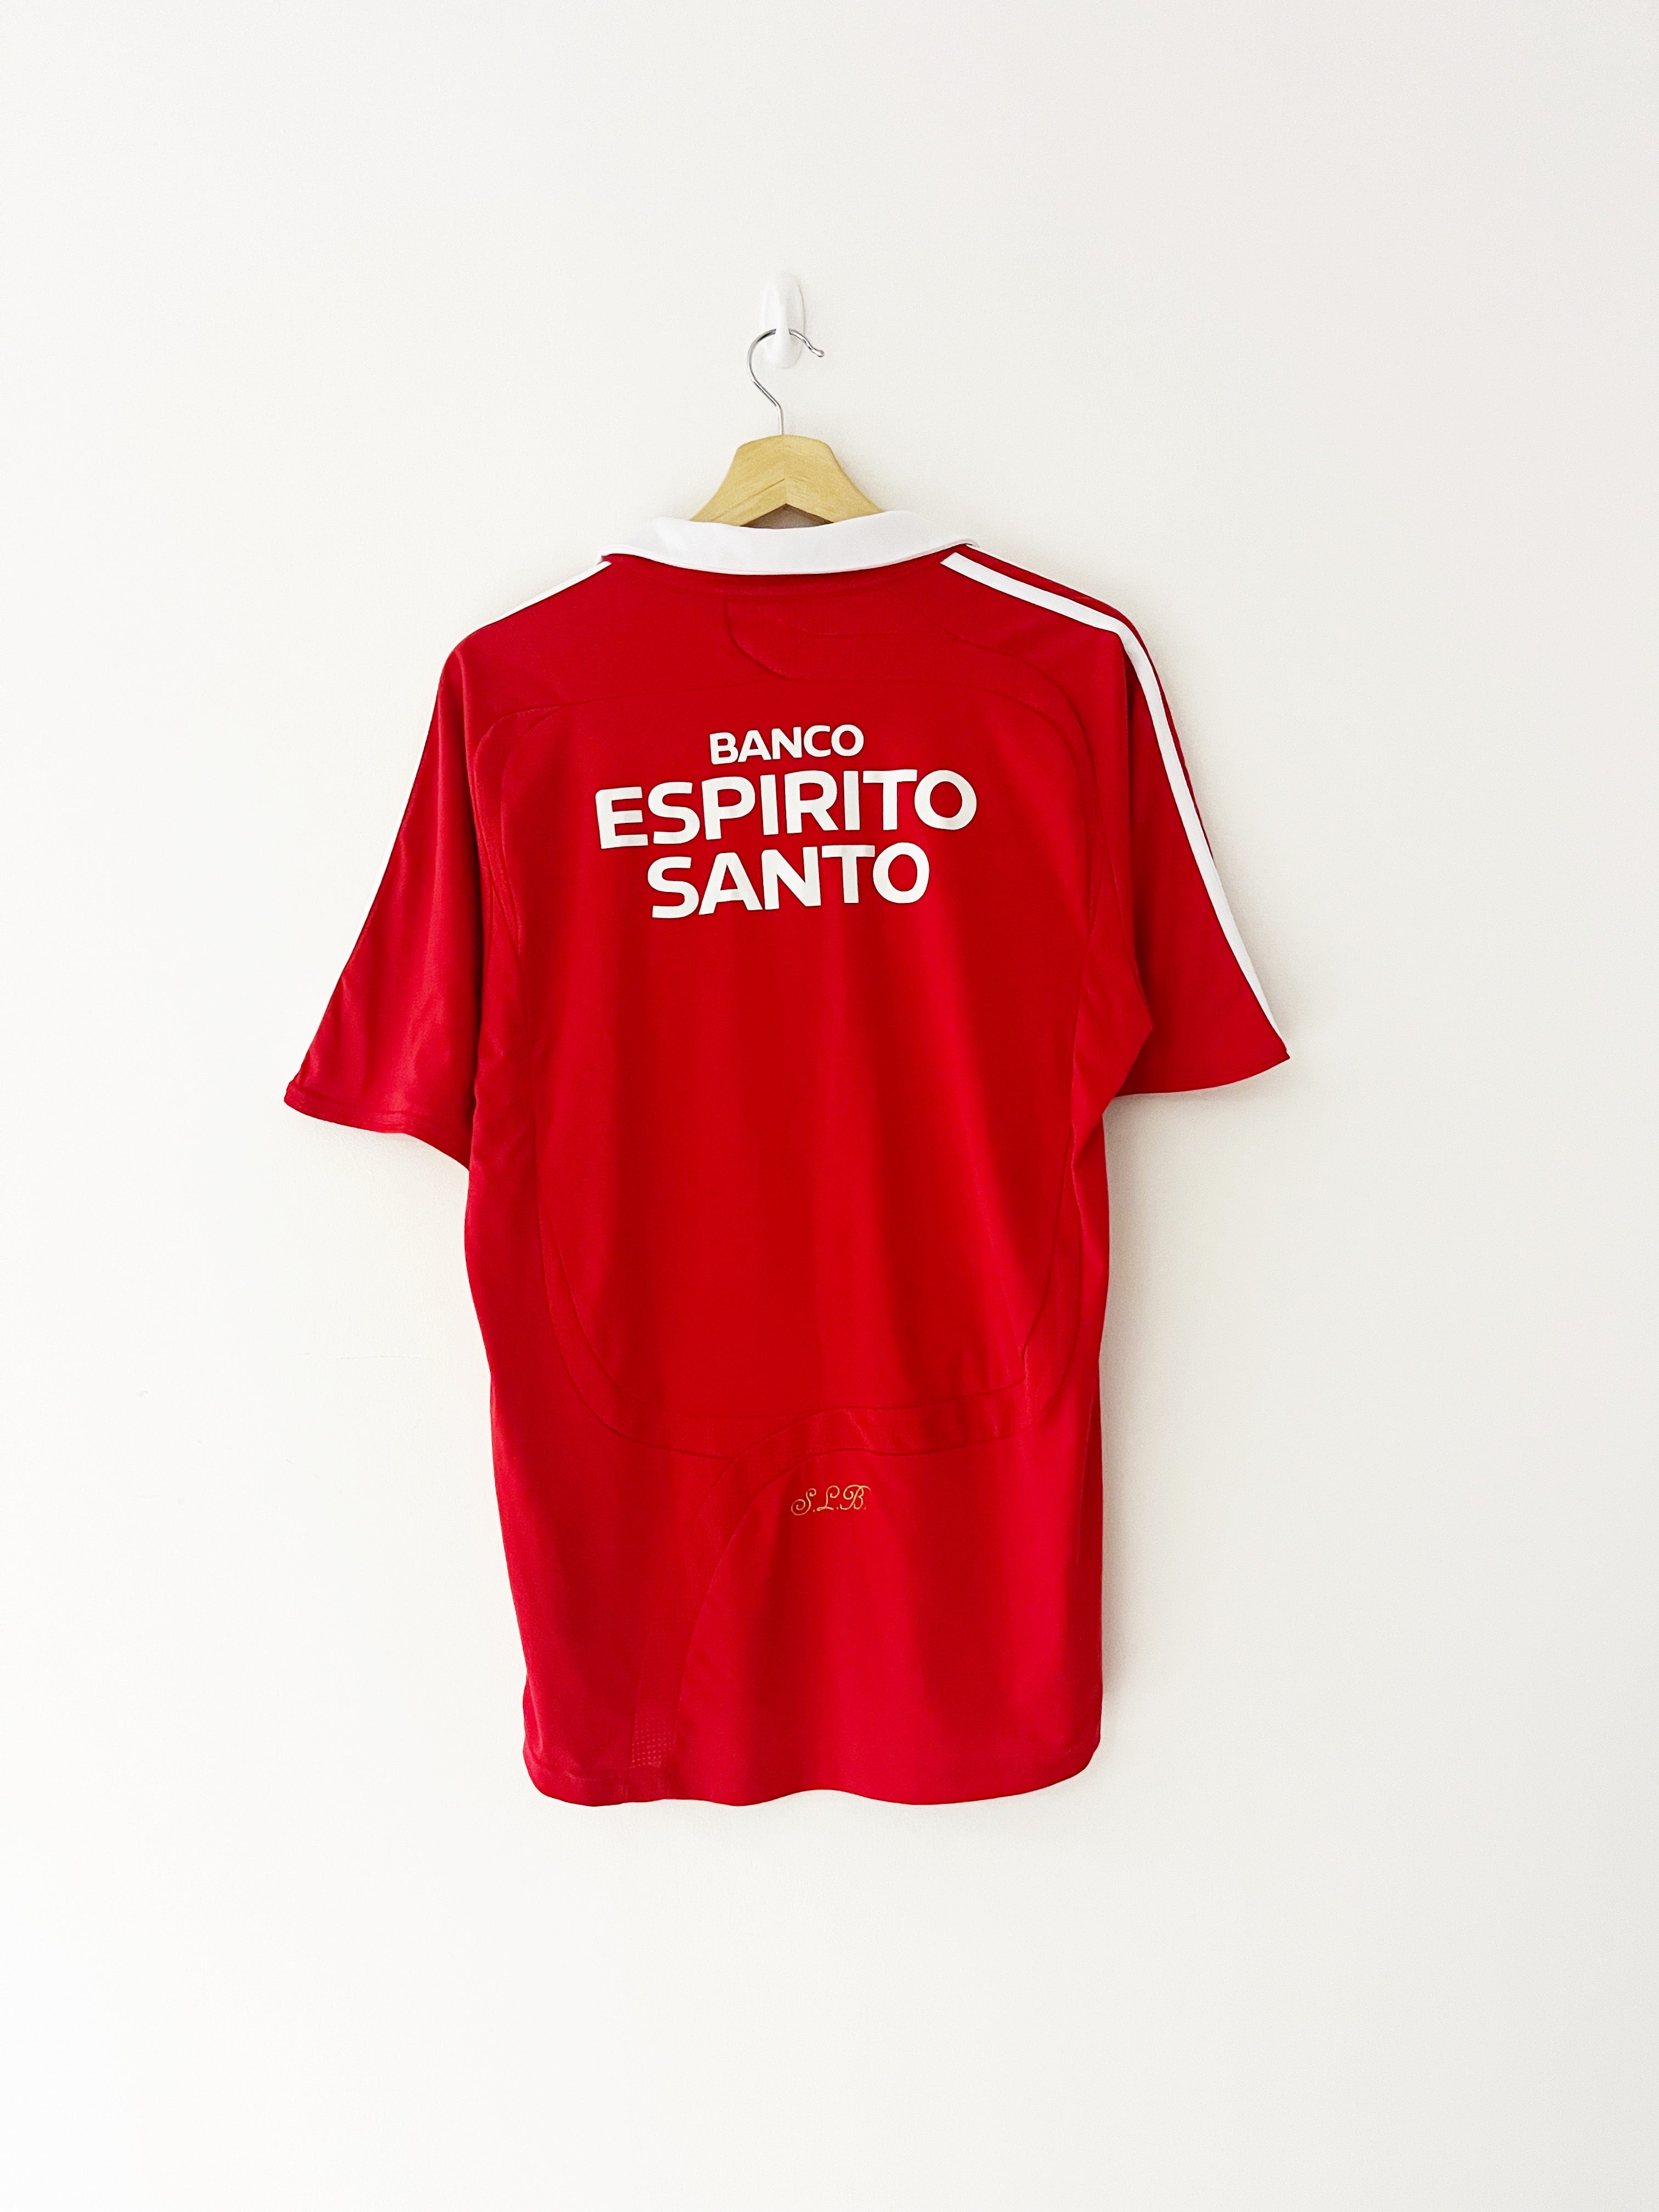 2007/08 Benfica Home Shirt (M) 7/10